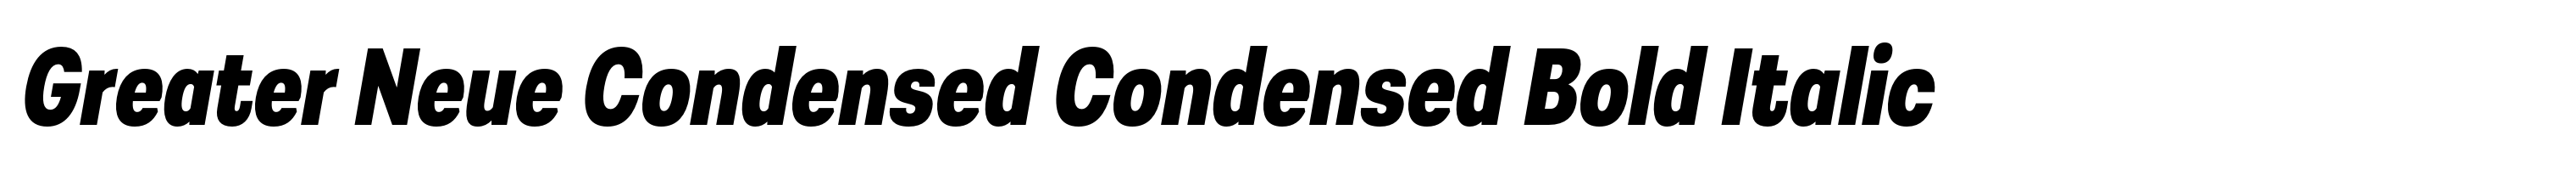 Greater Neue Condensed Condensed Bold Italic